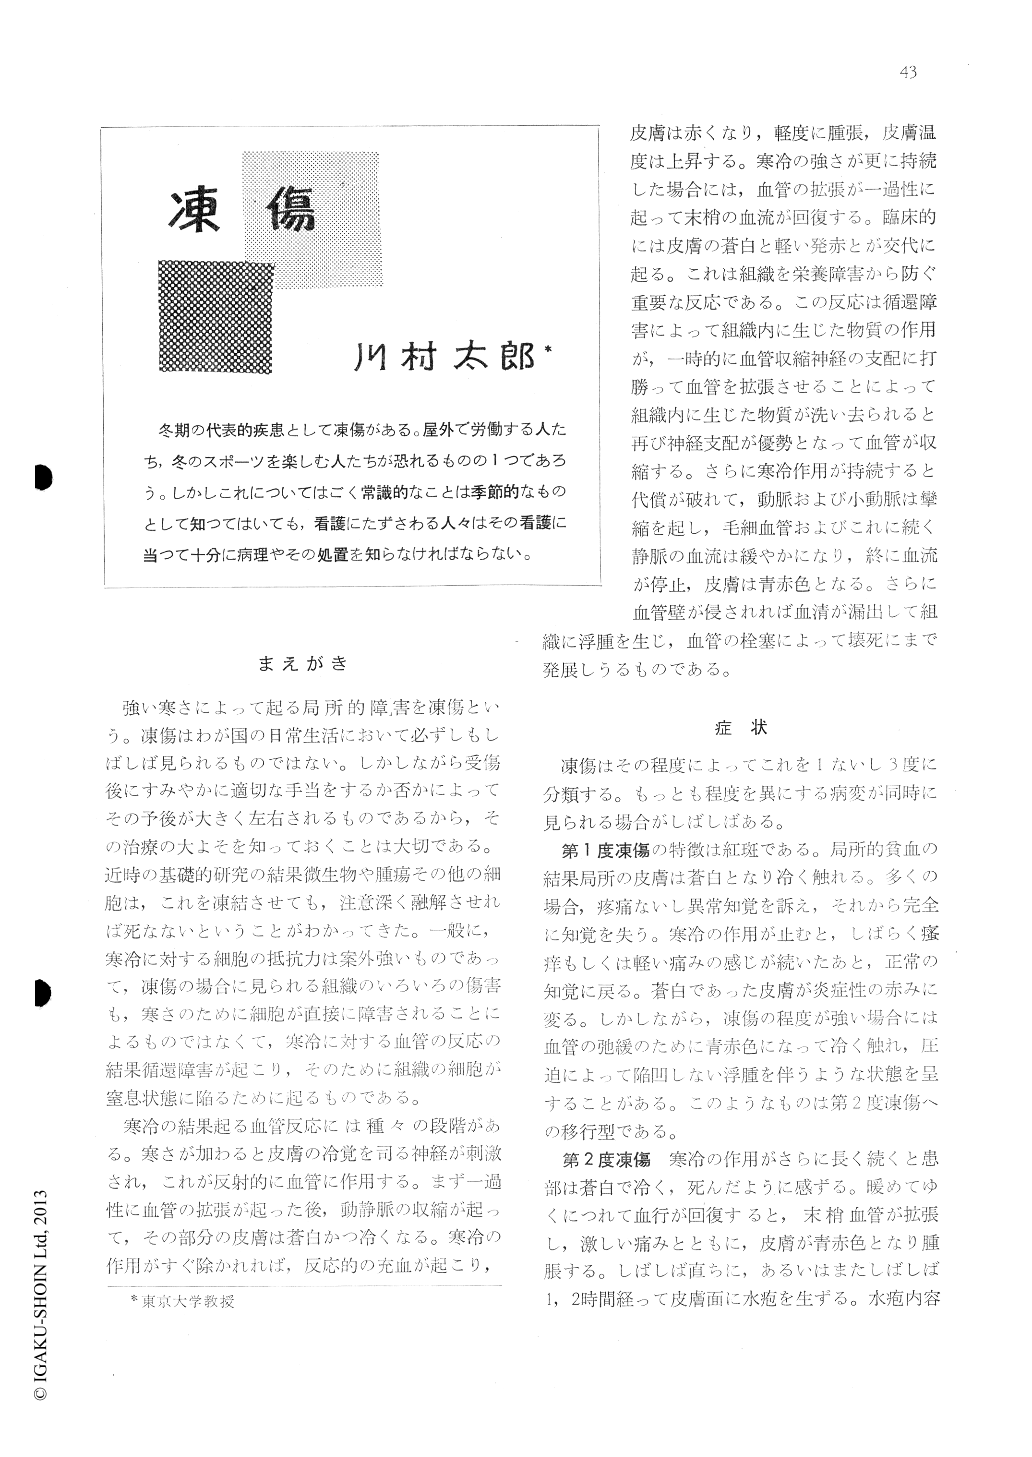 凍傷 看護学雑誌 25巻3号 医書 Jp